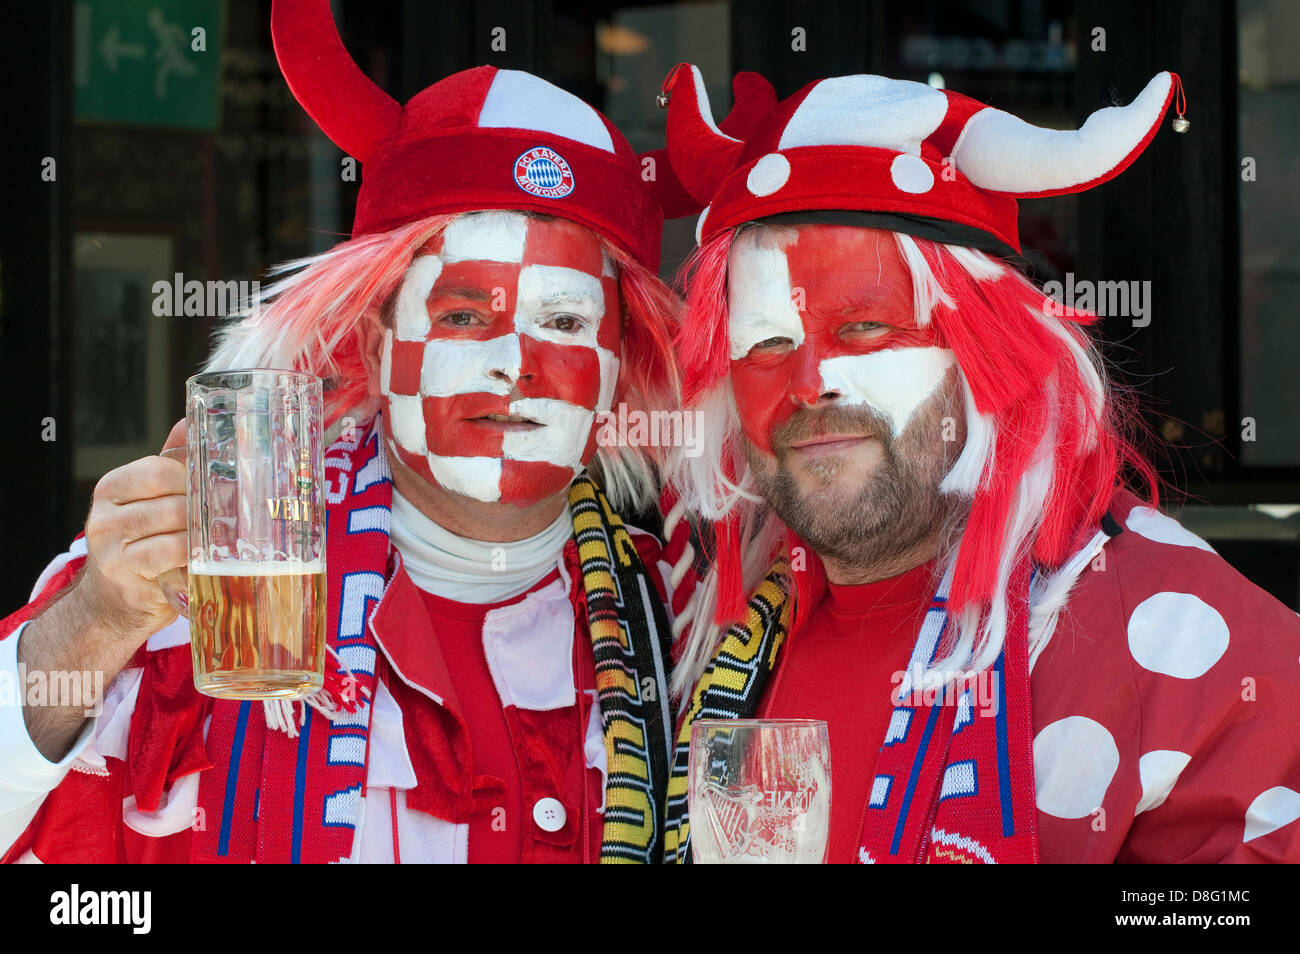 bayern munich football supporters, london, england Stock Photo